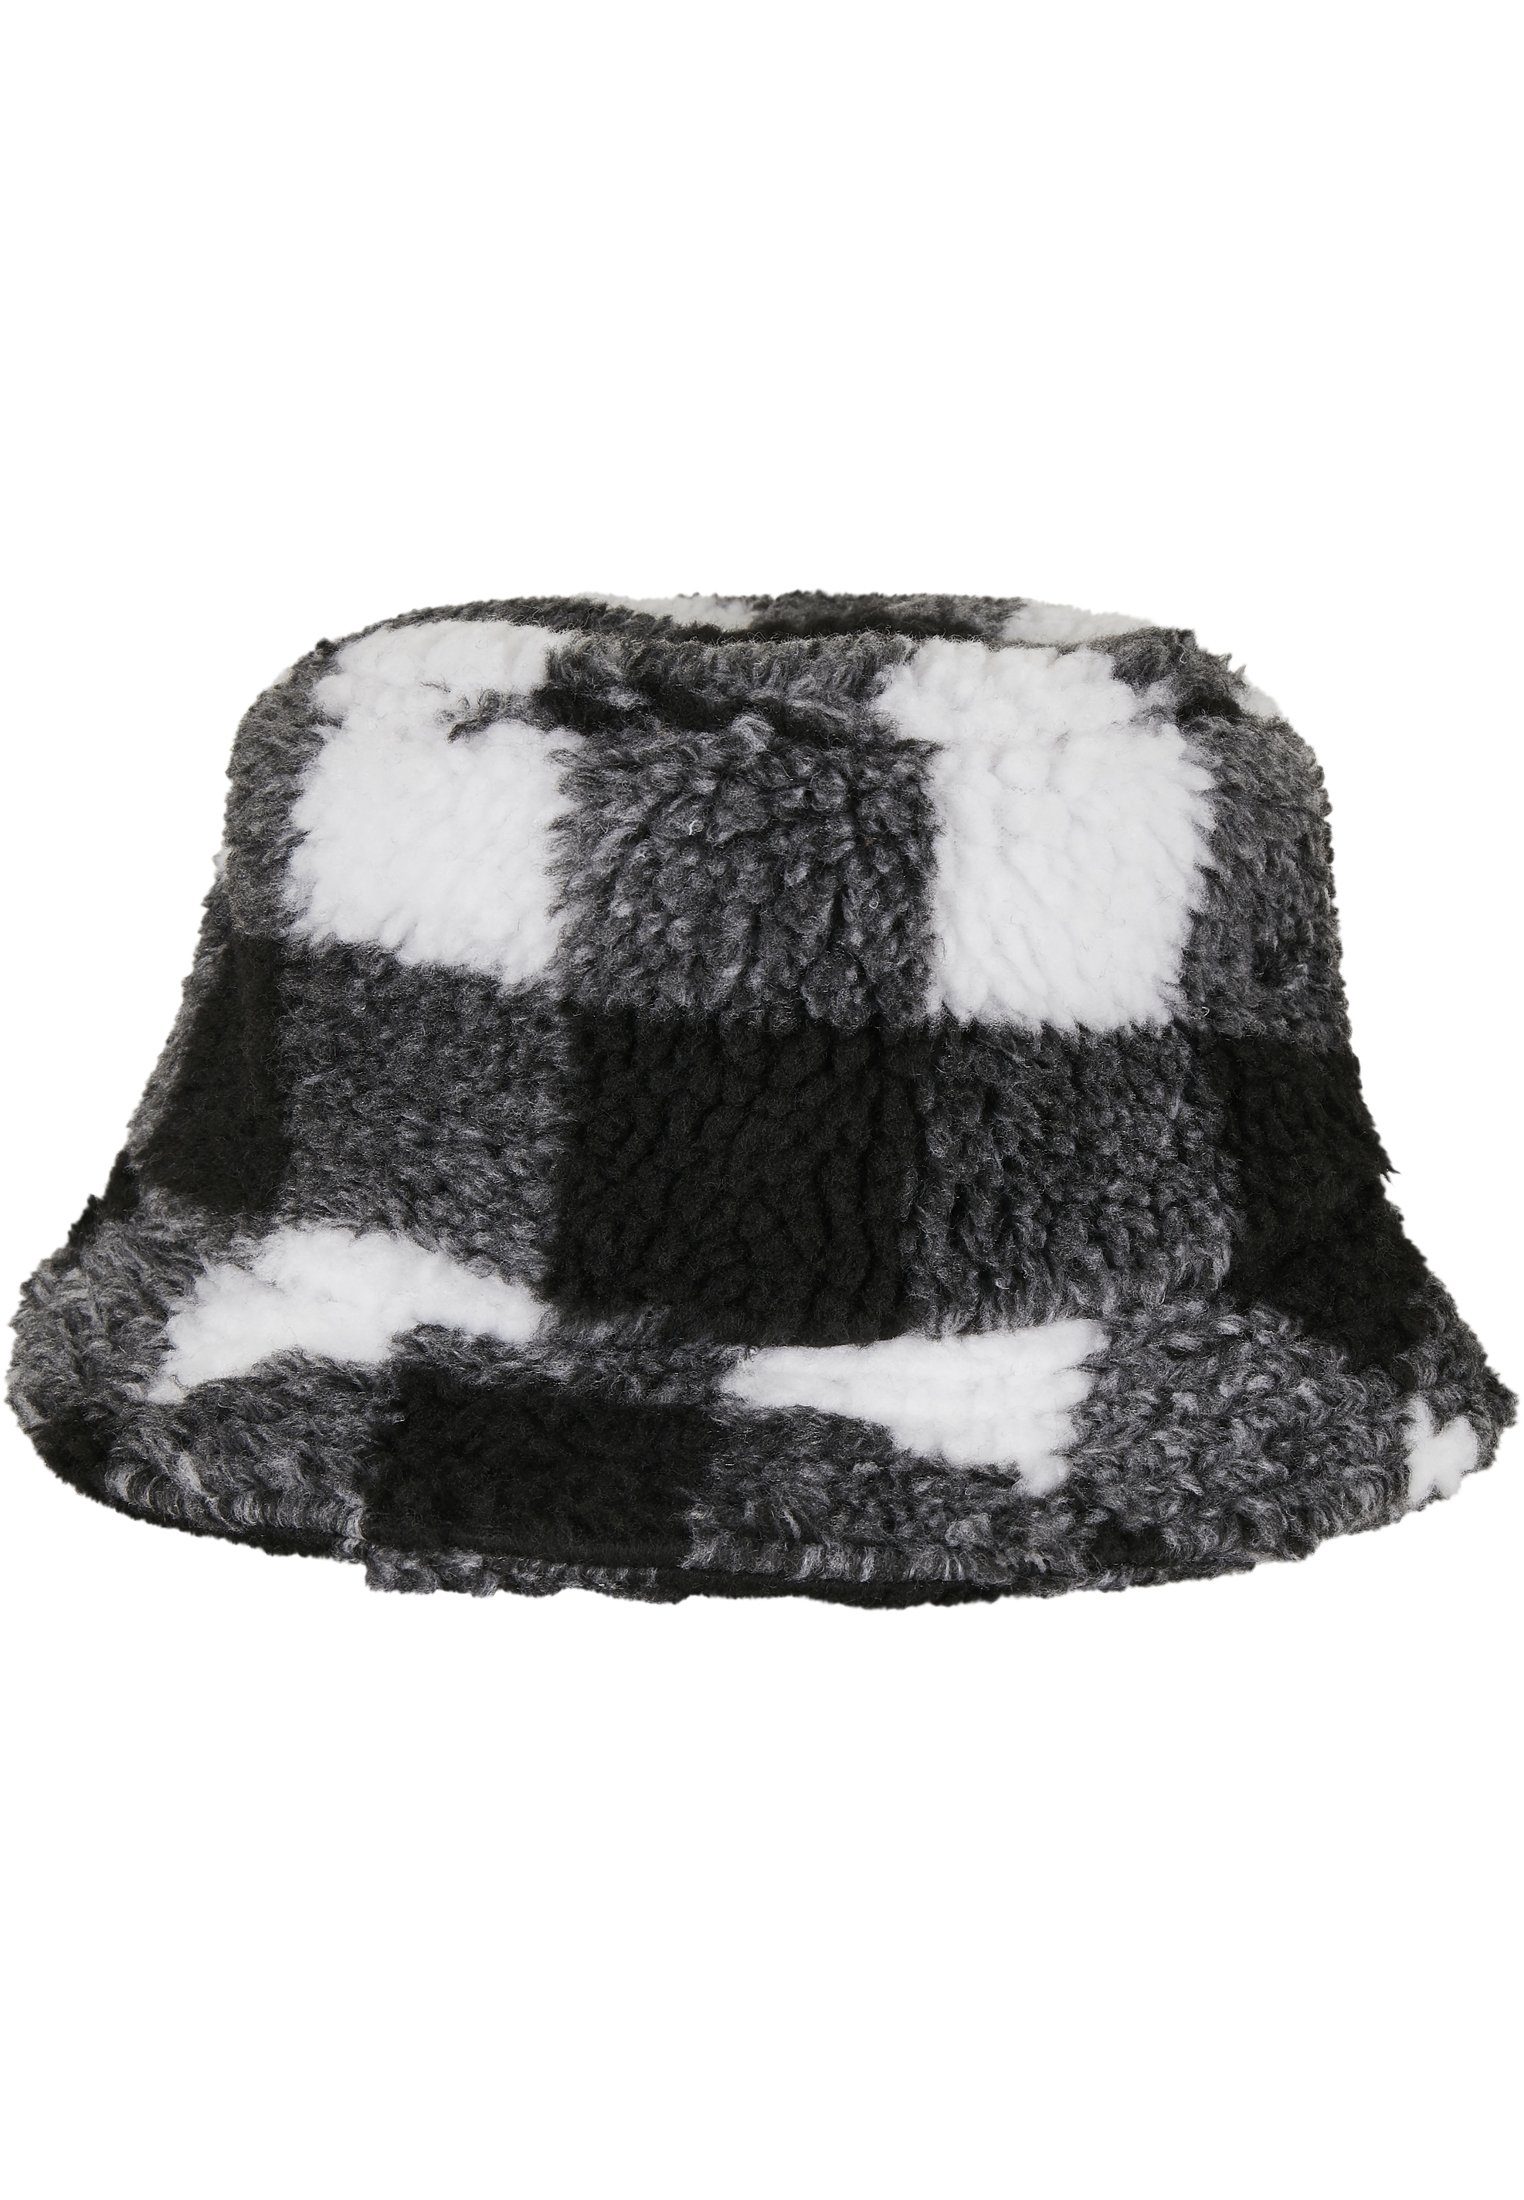 Flexfit Flex Cap Bucket Hat white/black Check Bucket Sherpa Hat